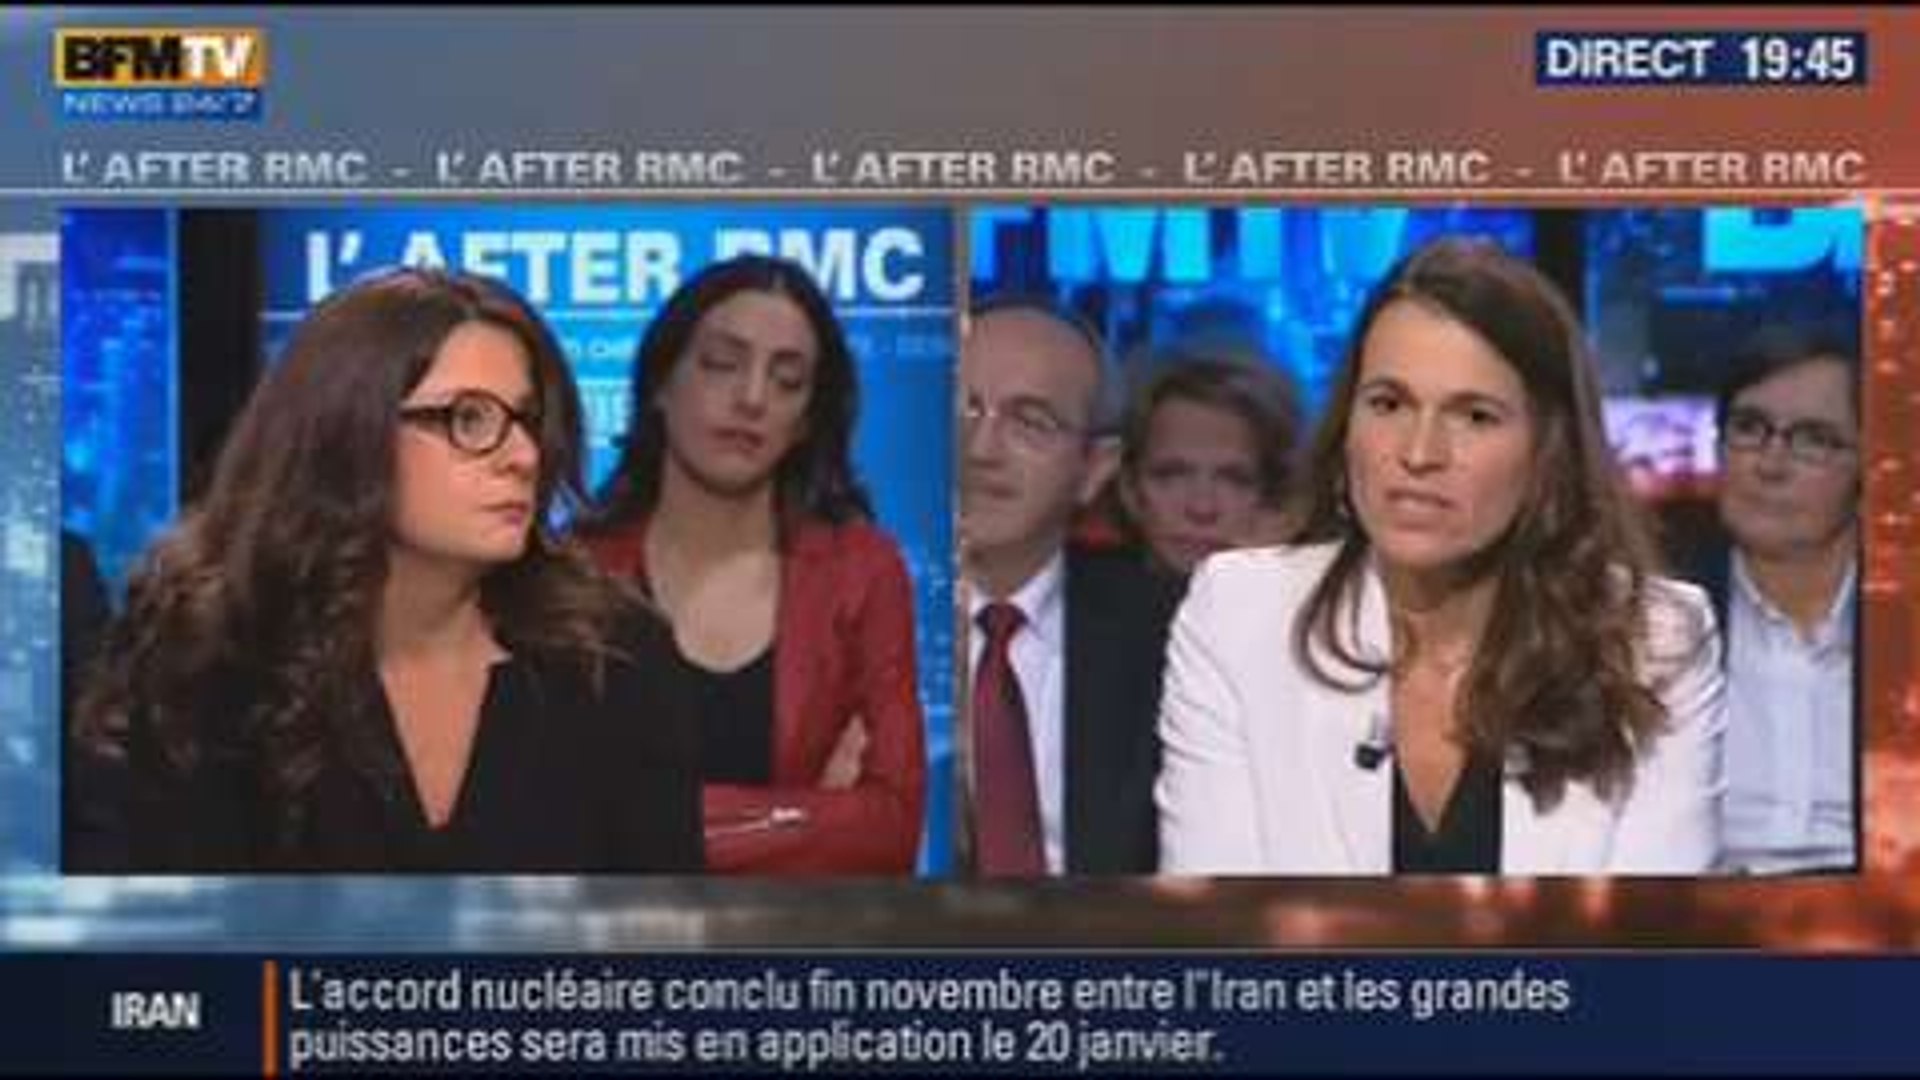 BFM Politique: L'After RMC: Aurélie Filippetti répond aux questions  d'Annabel Roger - 12/01 6/6 - Vidéo Dailymotion